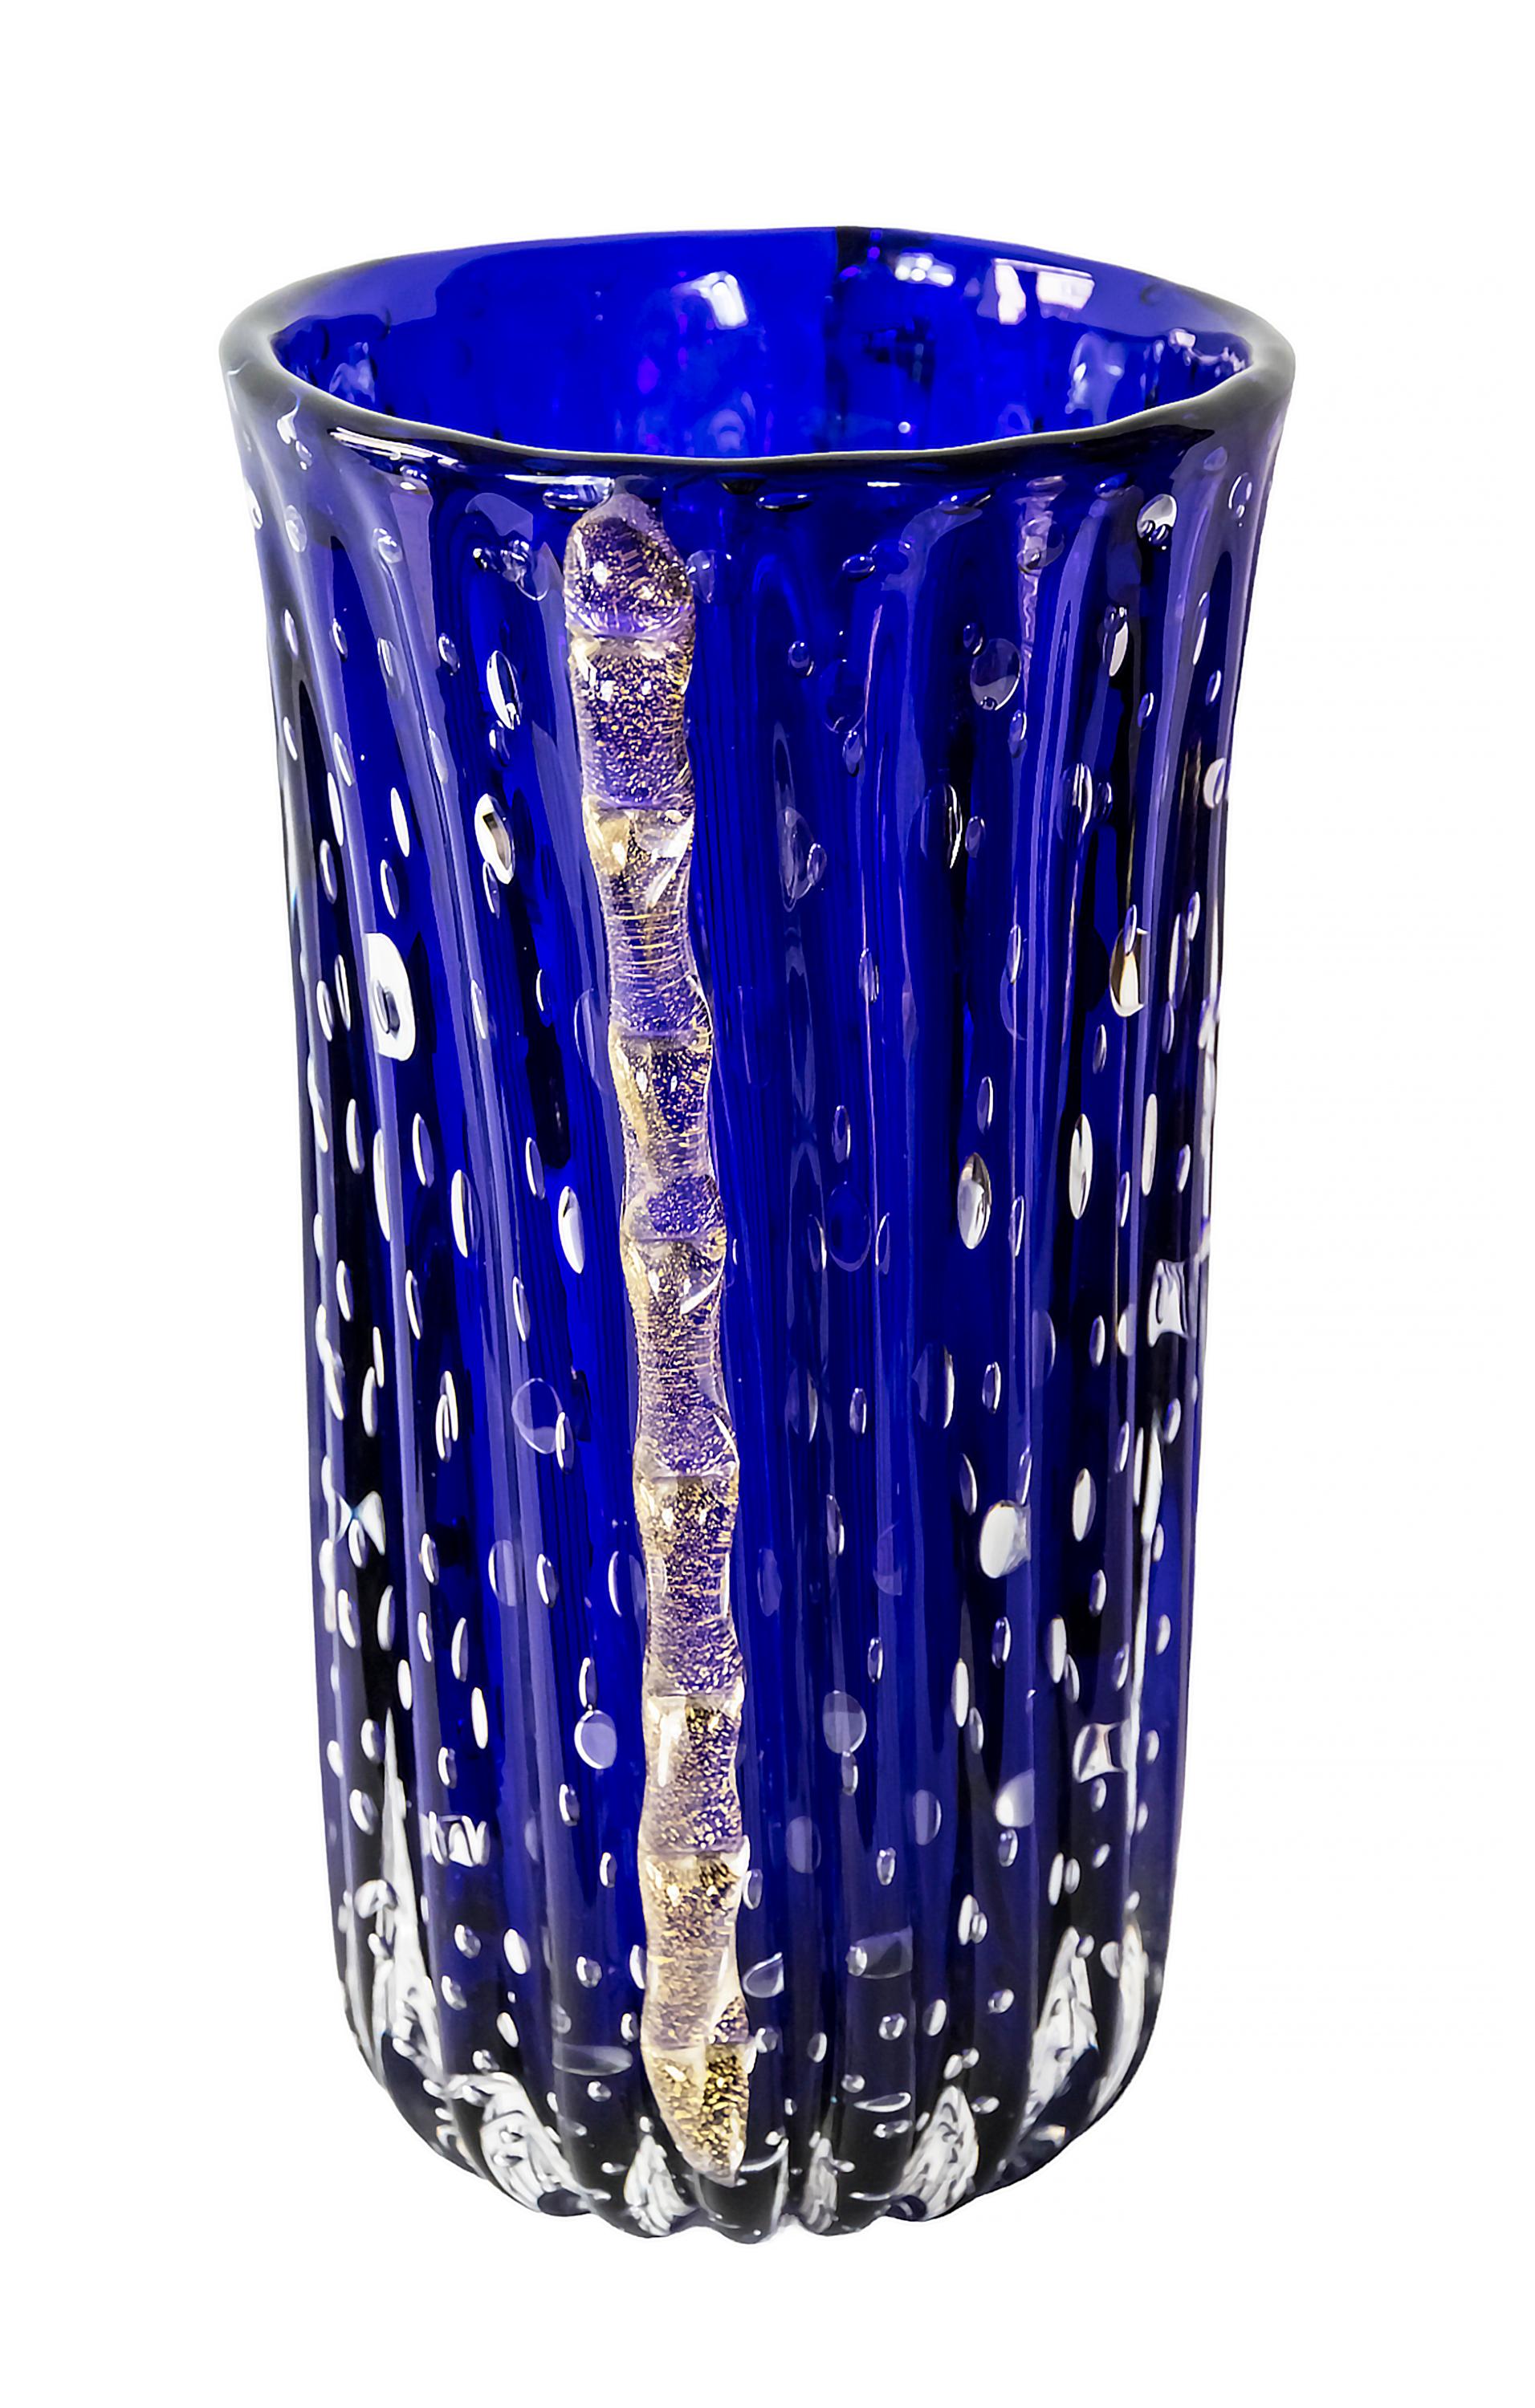 Handgefertigte italienische Vase aus Murano-Glas, ca. 1970er Jahre.
Das Glas hat eine tiefblaue Farbe mit Luftblasen im Inneren.
Die Seiten sind mit eingelegten Goldstaub-Glasdetails verziert.